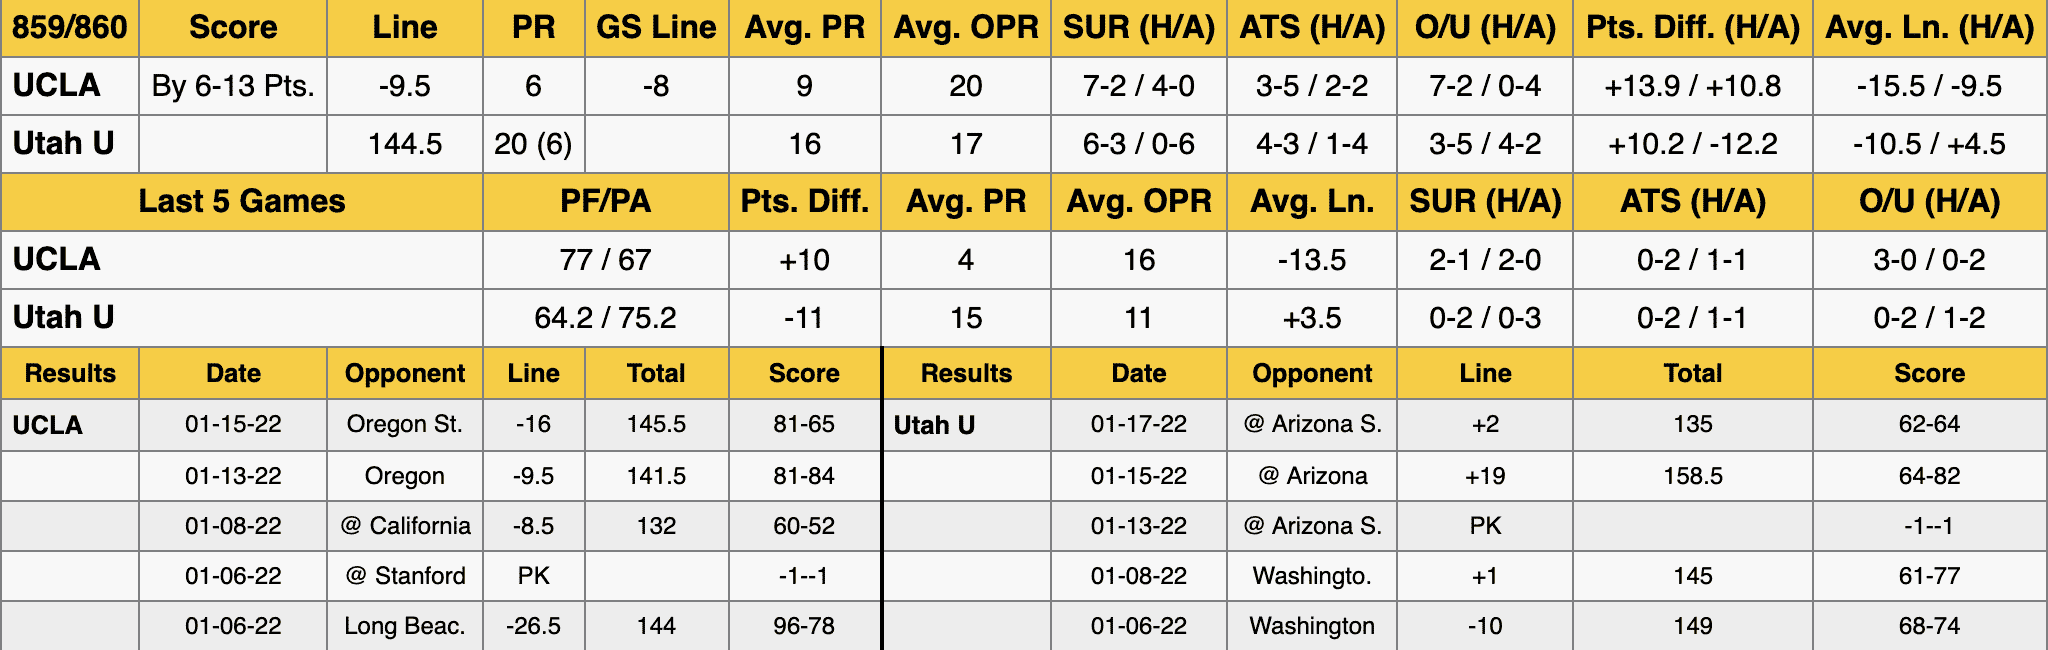 UCLA vs Utah Stats Jan 20